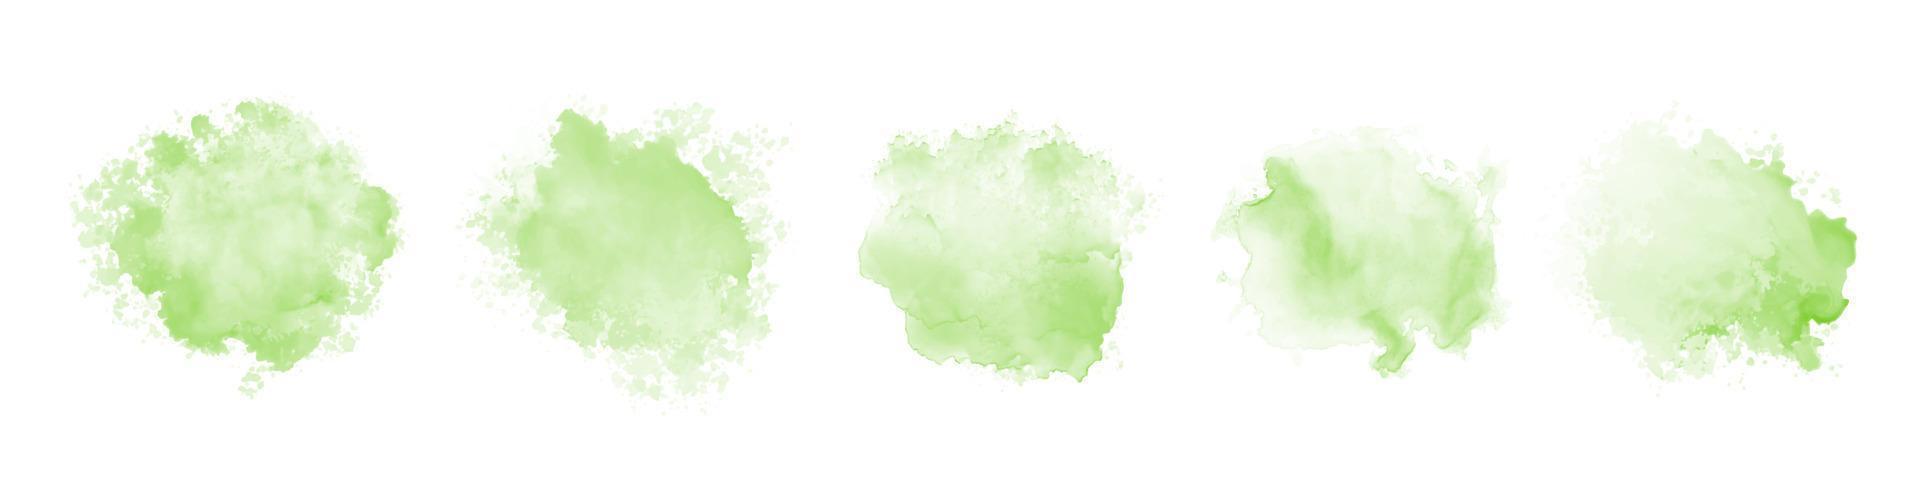 Reihe von abstrakten grünen Aquarell Spritzwasser auf weißem Hintergrund. Vektor-Aquarell-Textur in Salatfarbe vektor